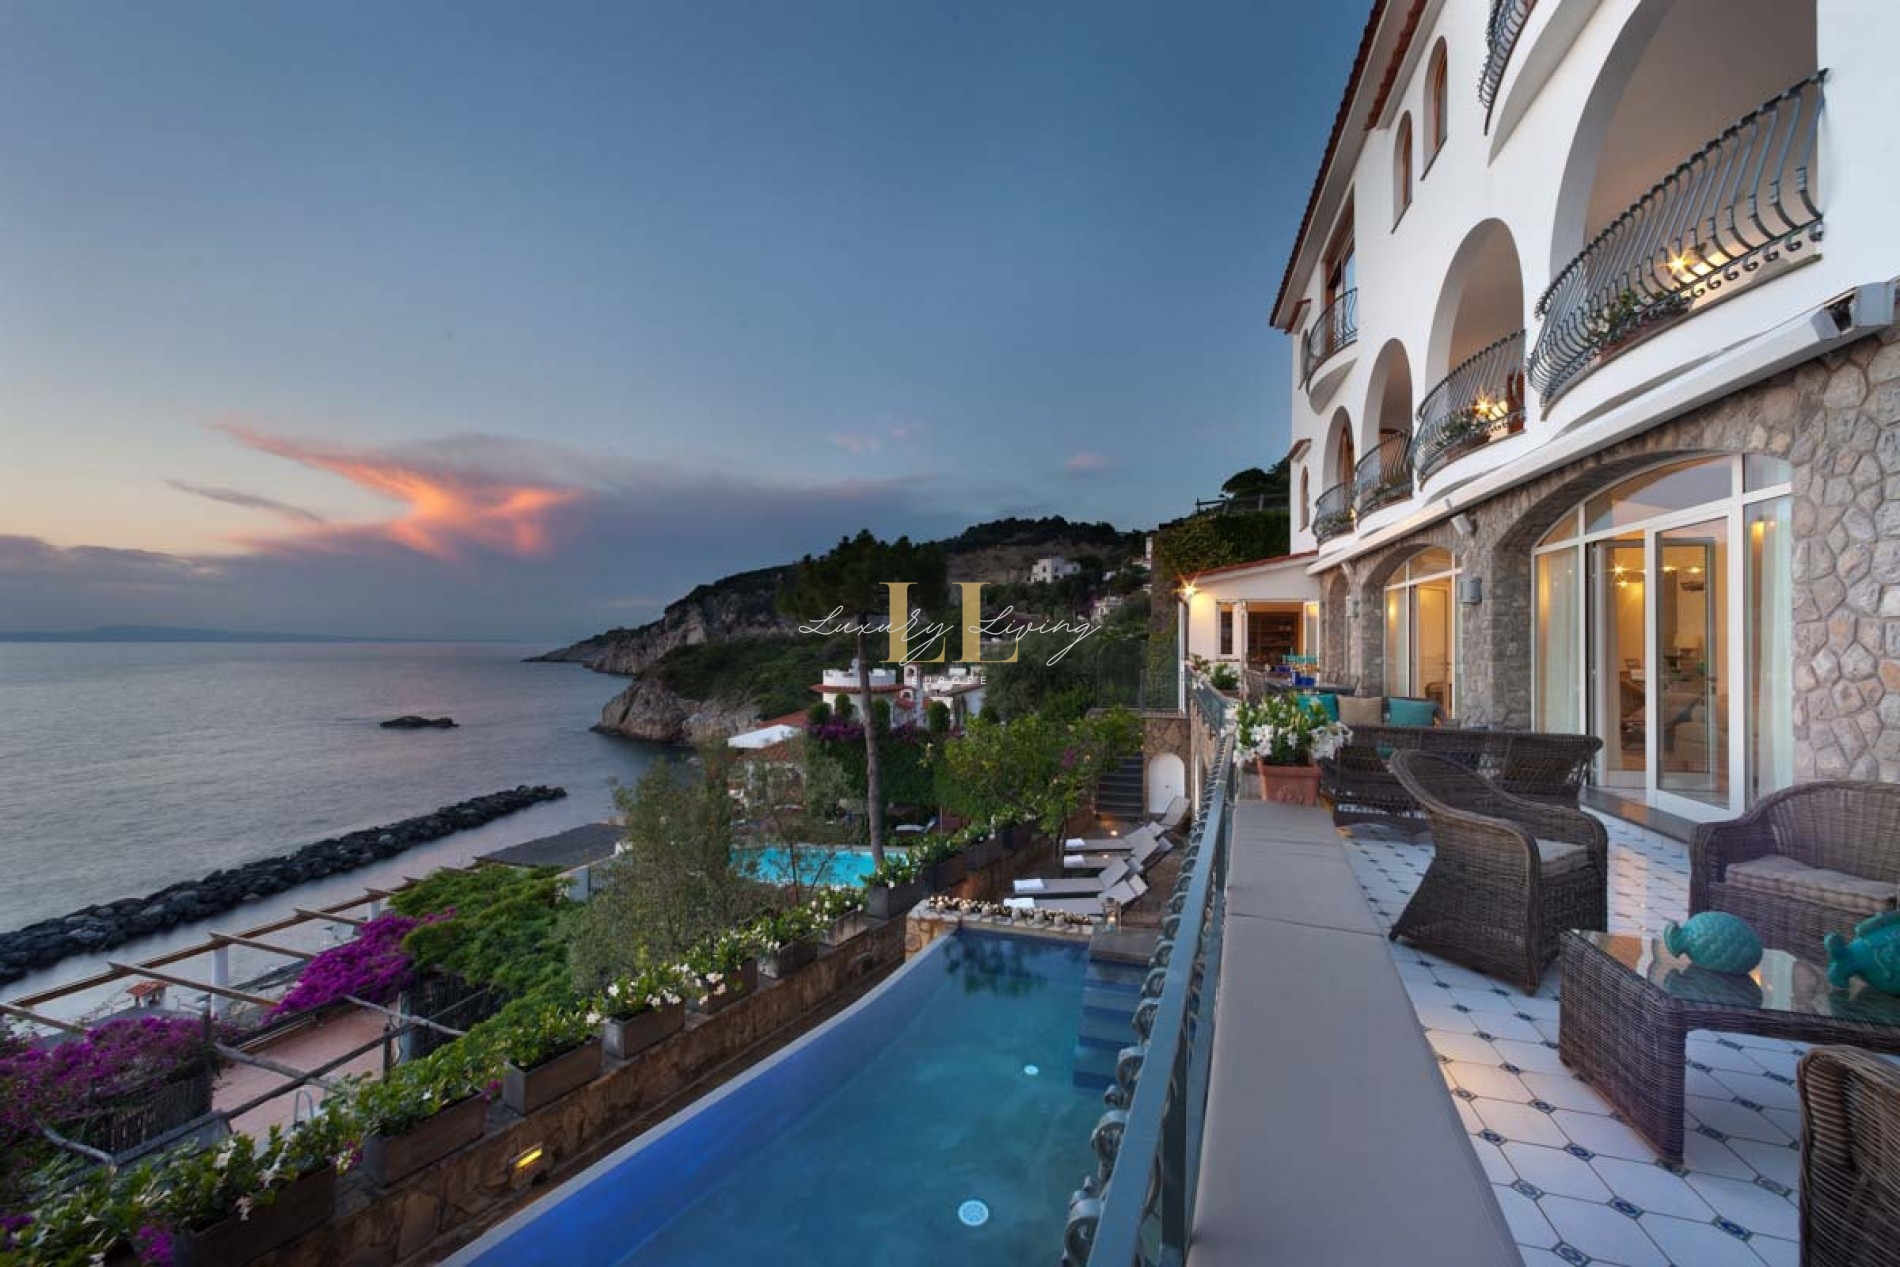 Villa Giancarlo Accommodation in Amalfi